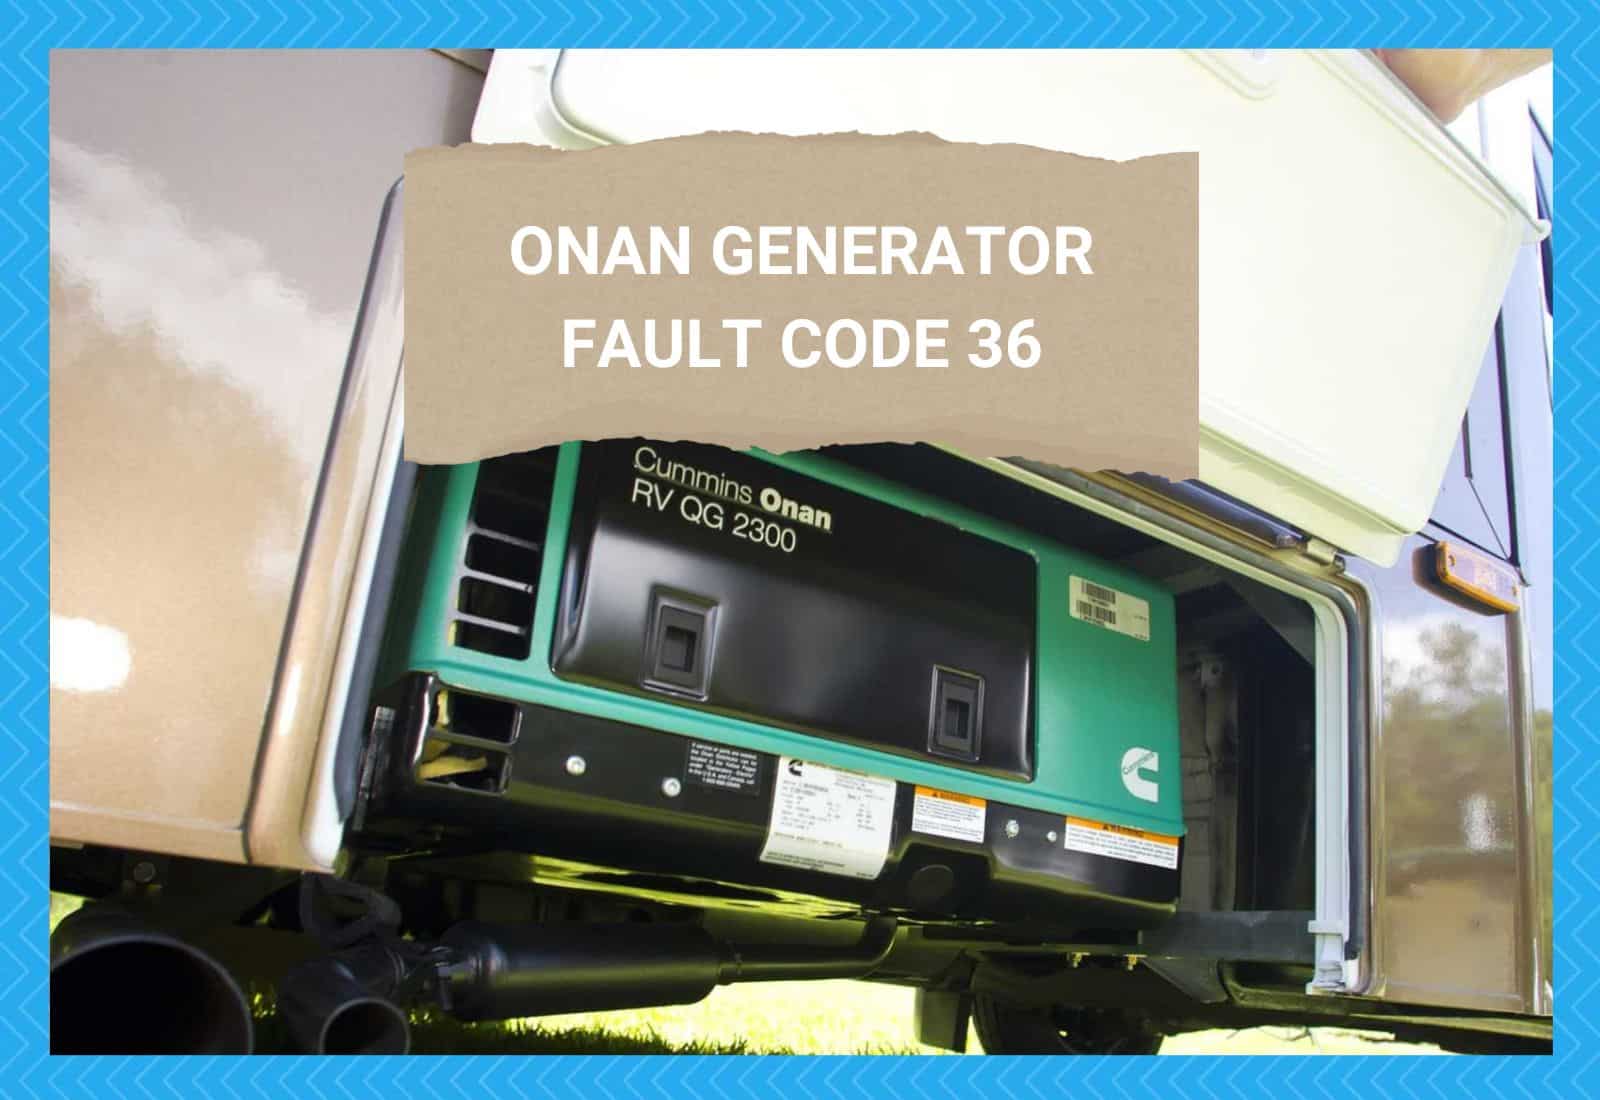 Onan Generator Fault Code 36